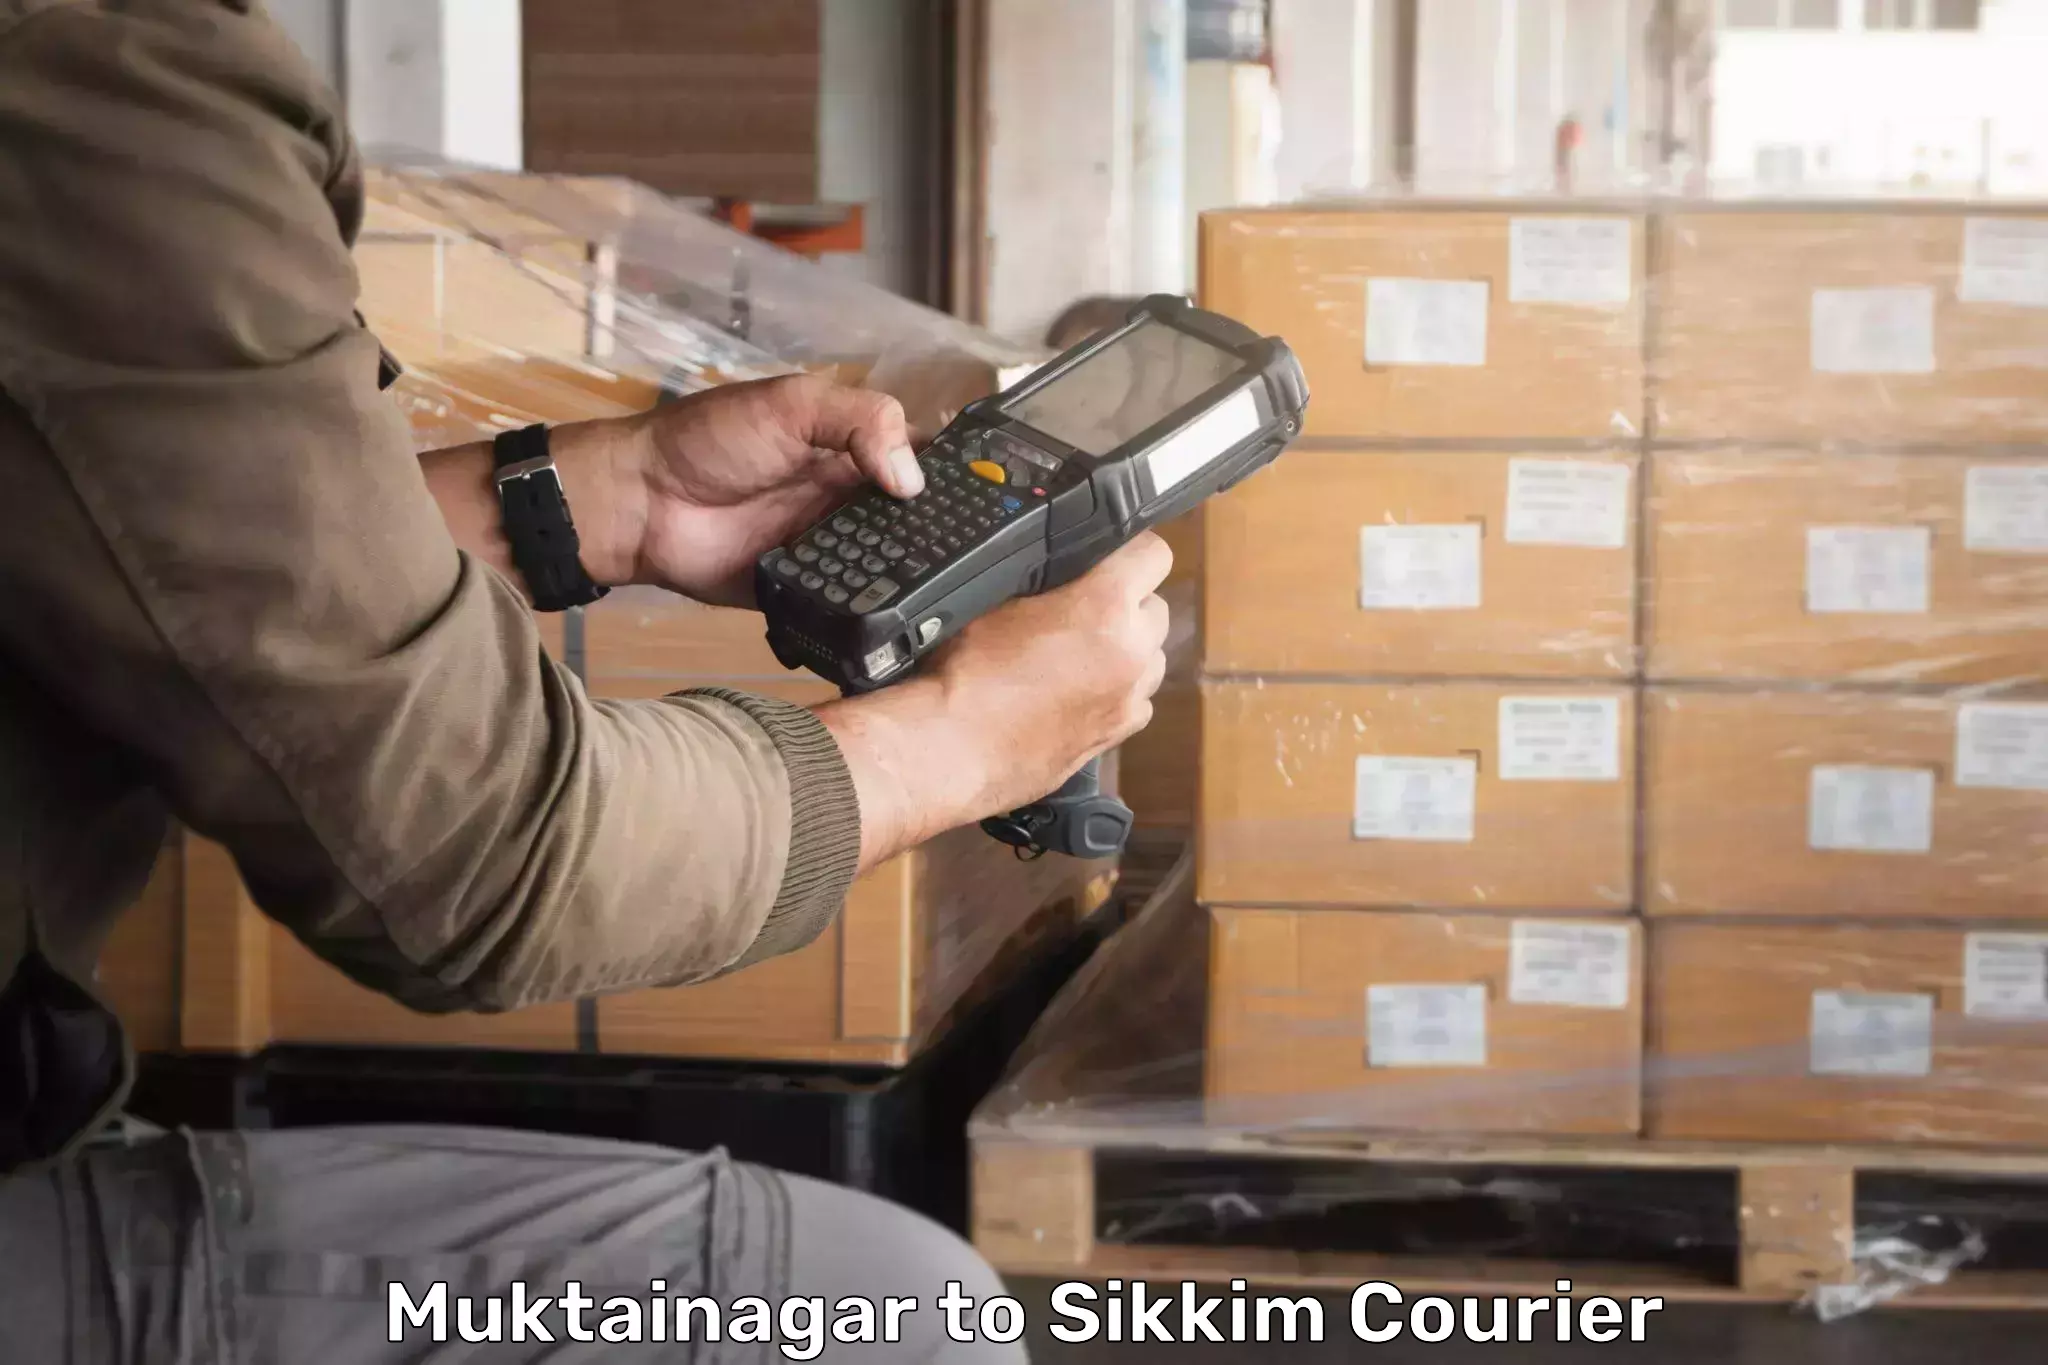 Urban courier service Muktainagar to NIT Sikkim